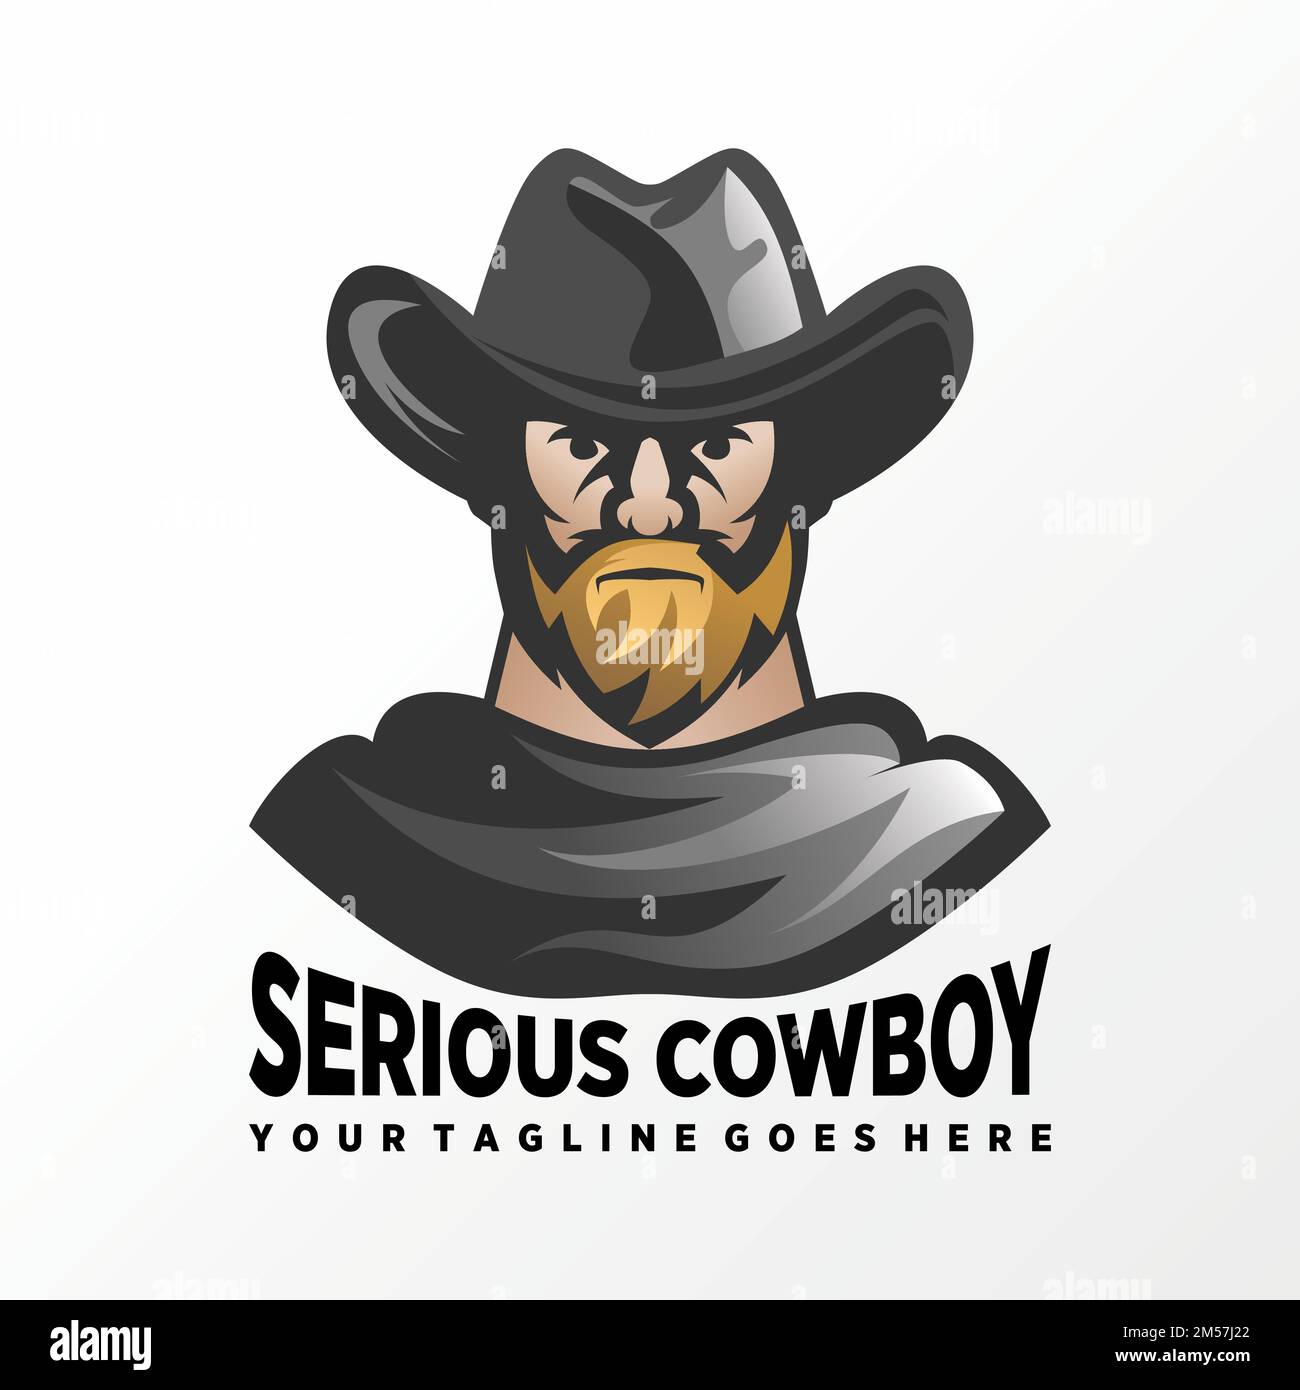 Einzigartiger seriöser Cowboy mit Hut und Bademantel Grafik-Symbol Logo Design abstraktes Konzept Vektormaterial. Symbol, das mit einem Helden oder einer Figur verbunden ist. Stock Vektor